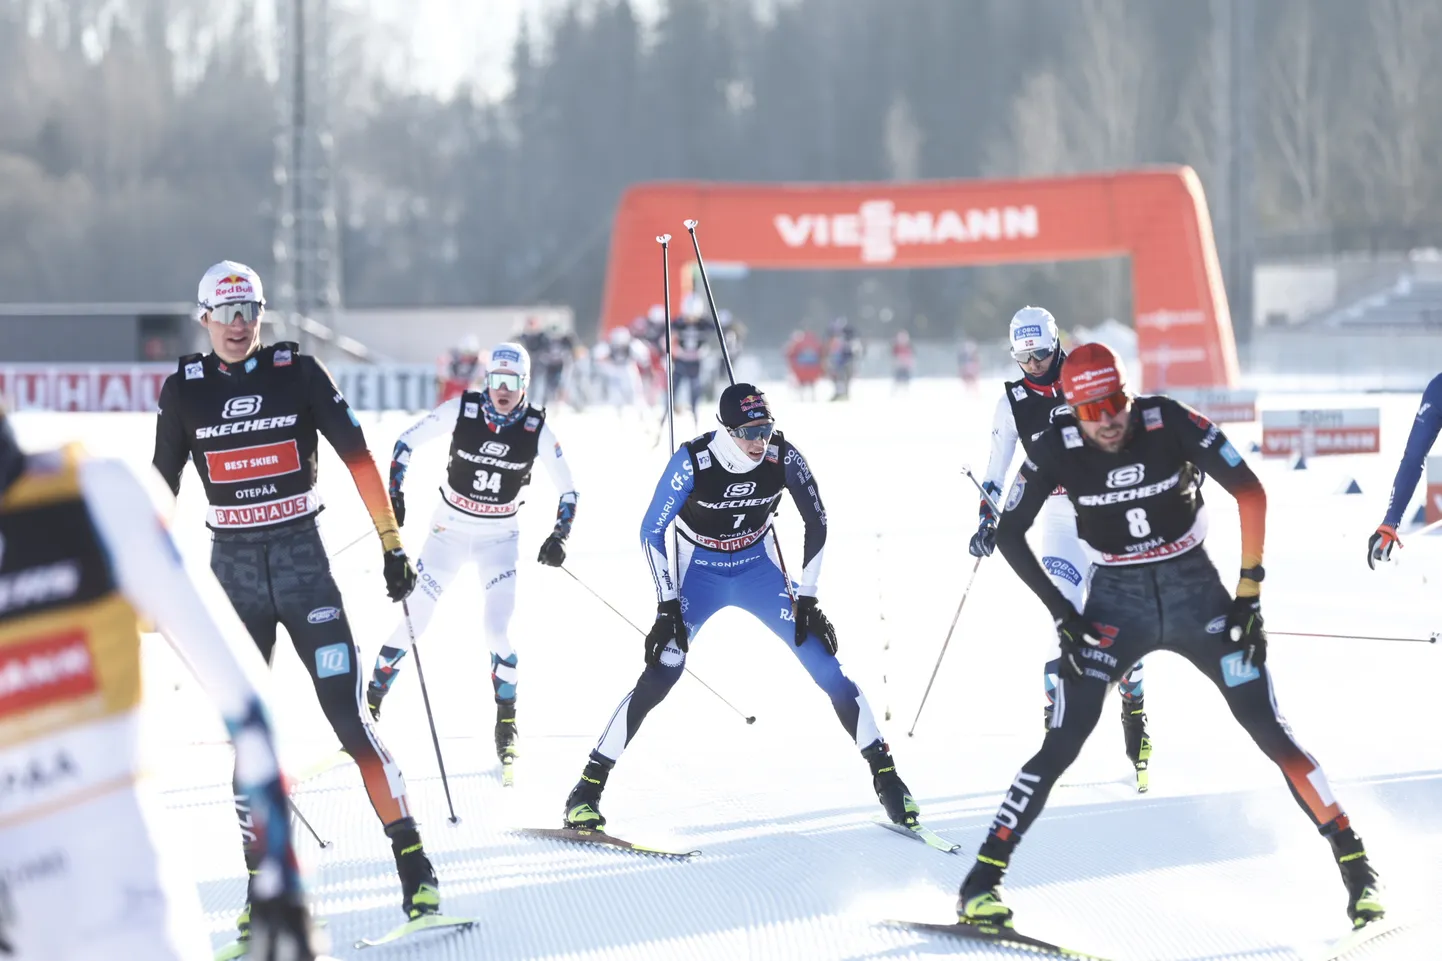 Этап Кубка мира по лыжному двоеборью. Кристьян Ильвес на финише (в центре).